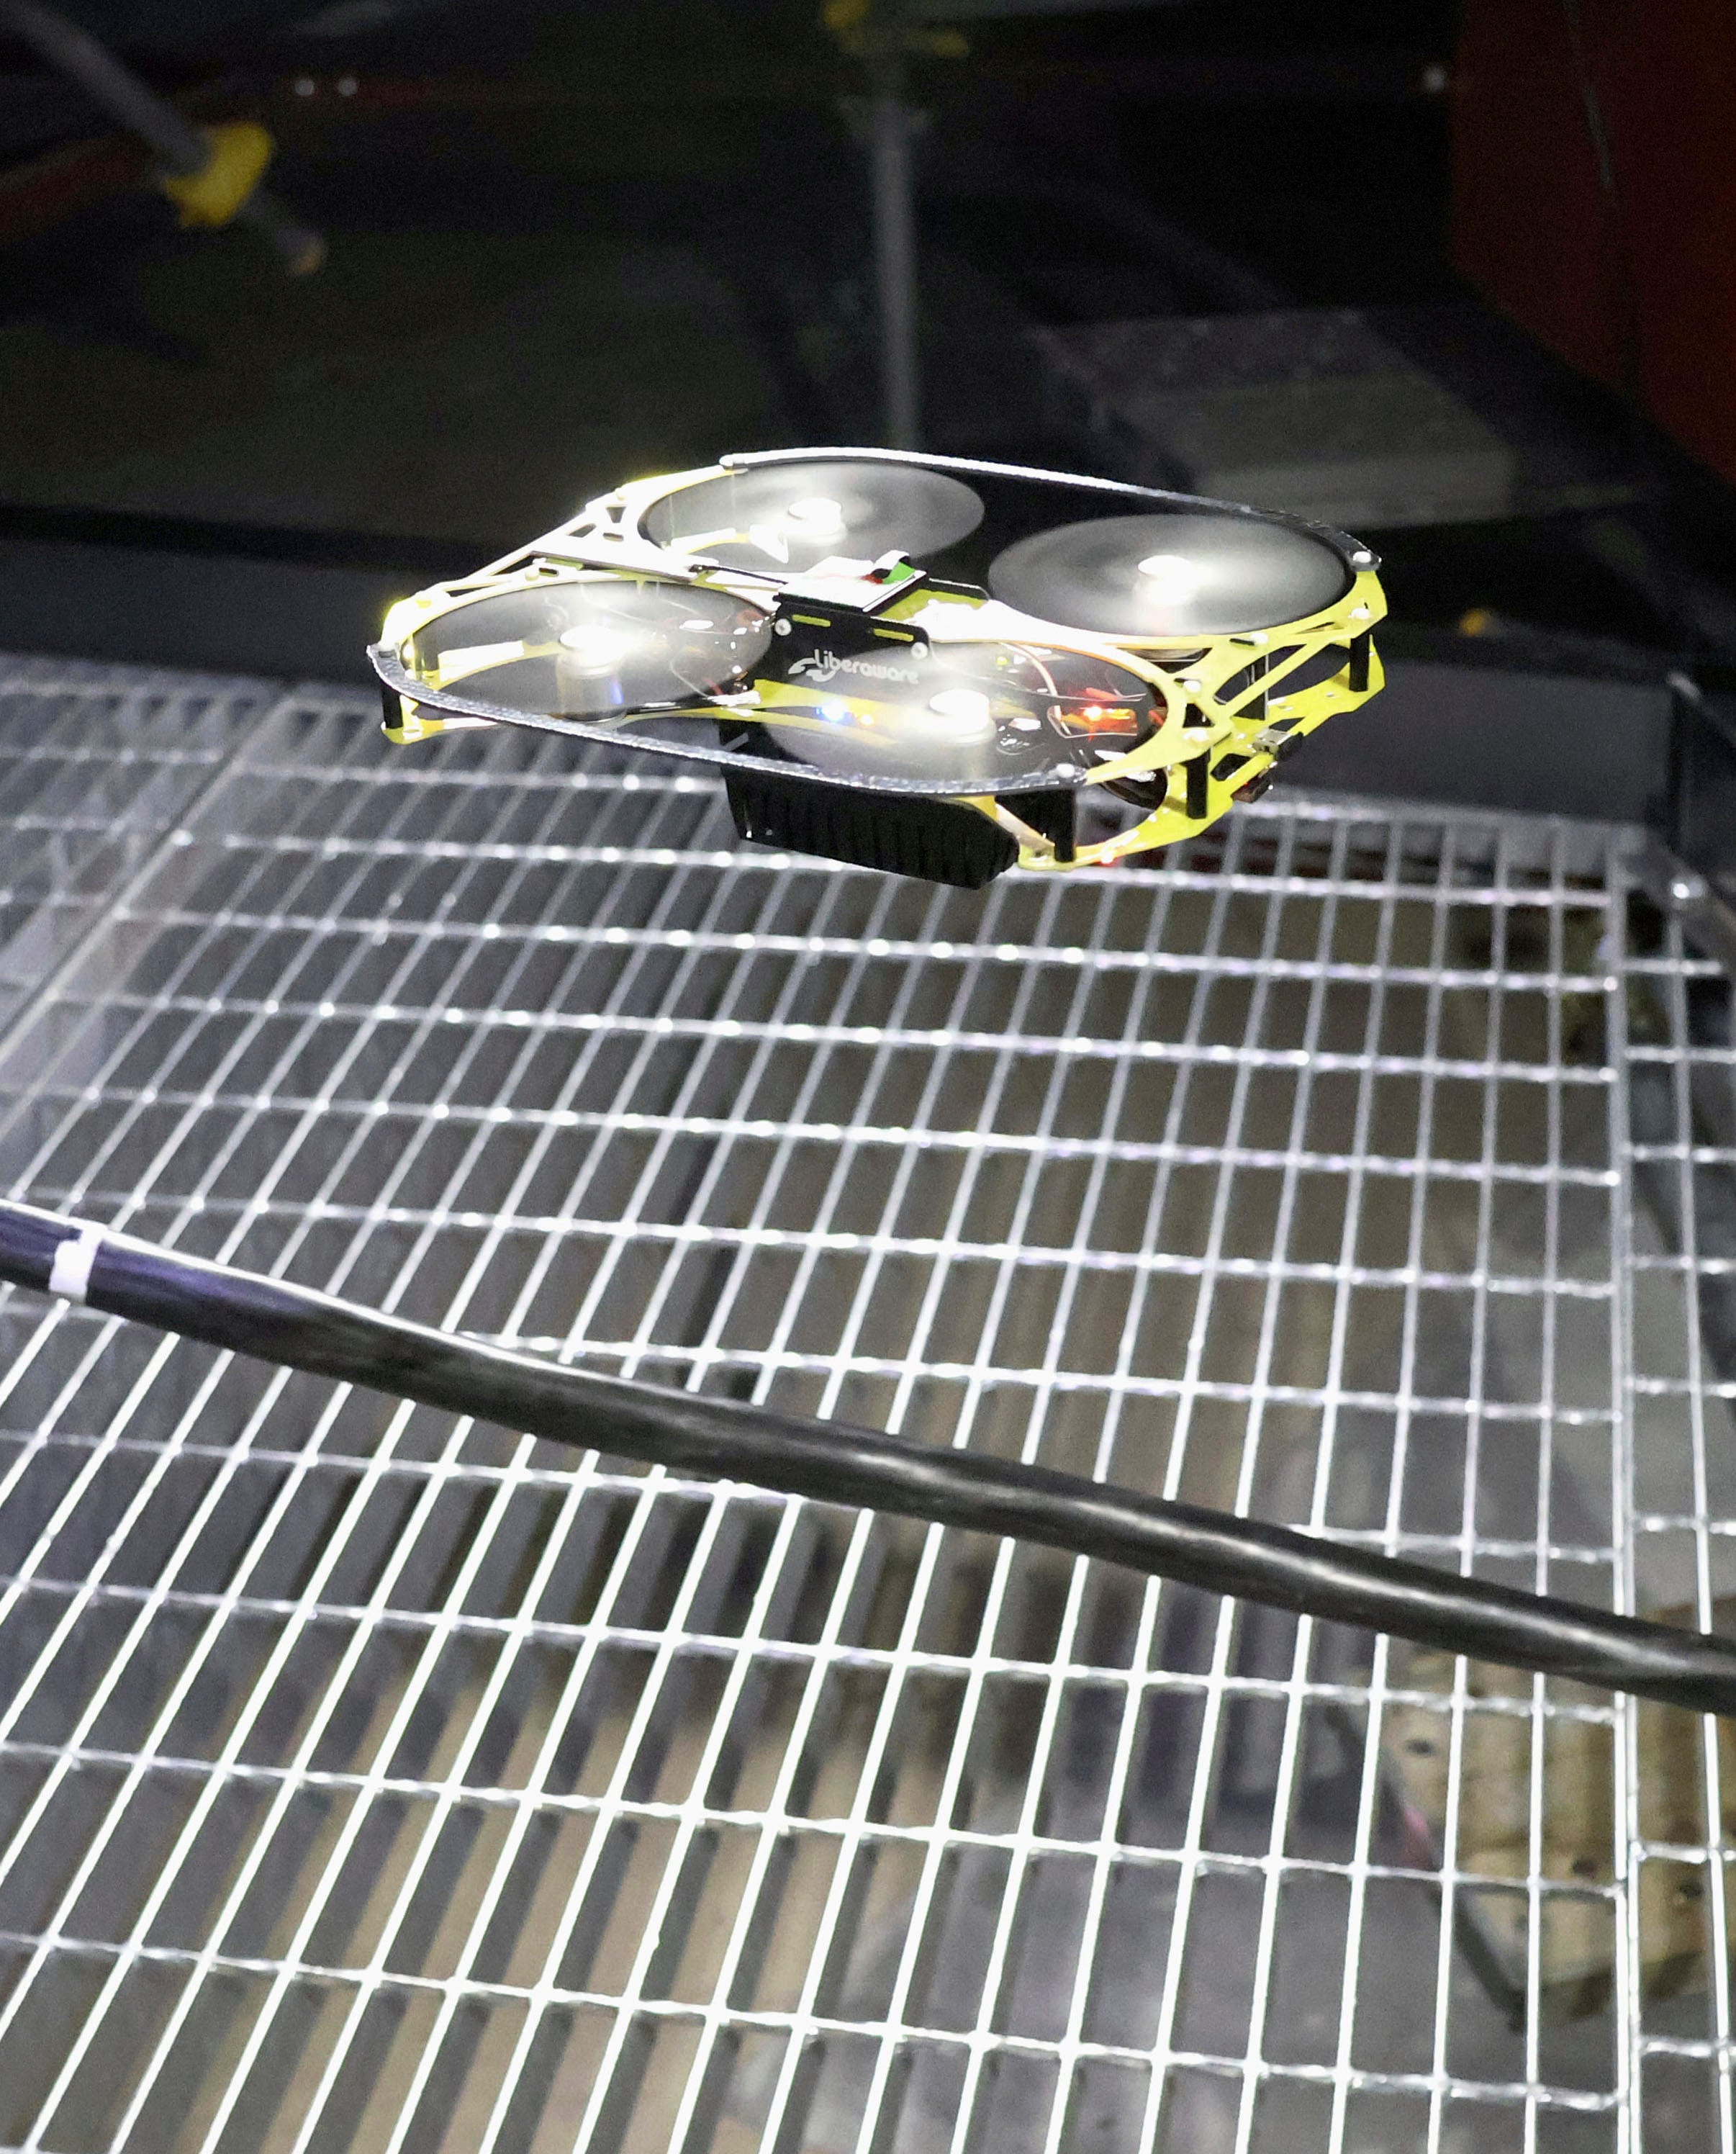 Ein Bild zeigt eine Drohne, die dank vier kleiner Ventilatoren über der Oberfläche schwebt.